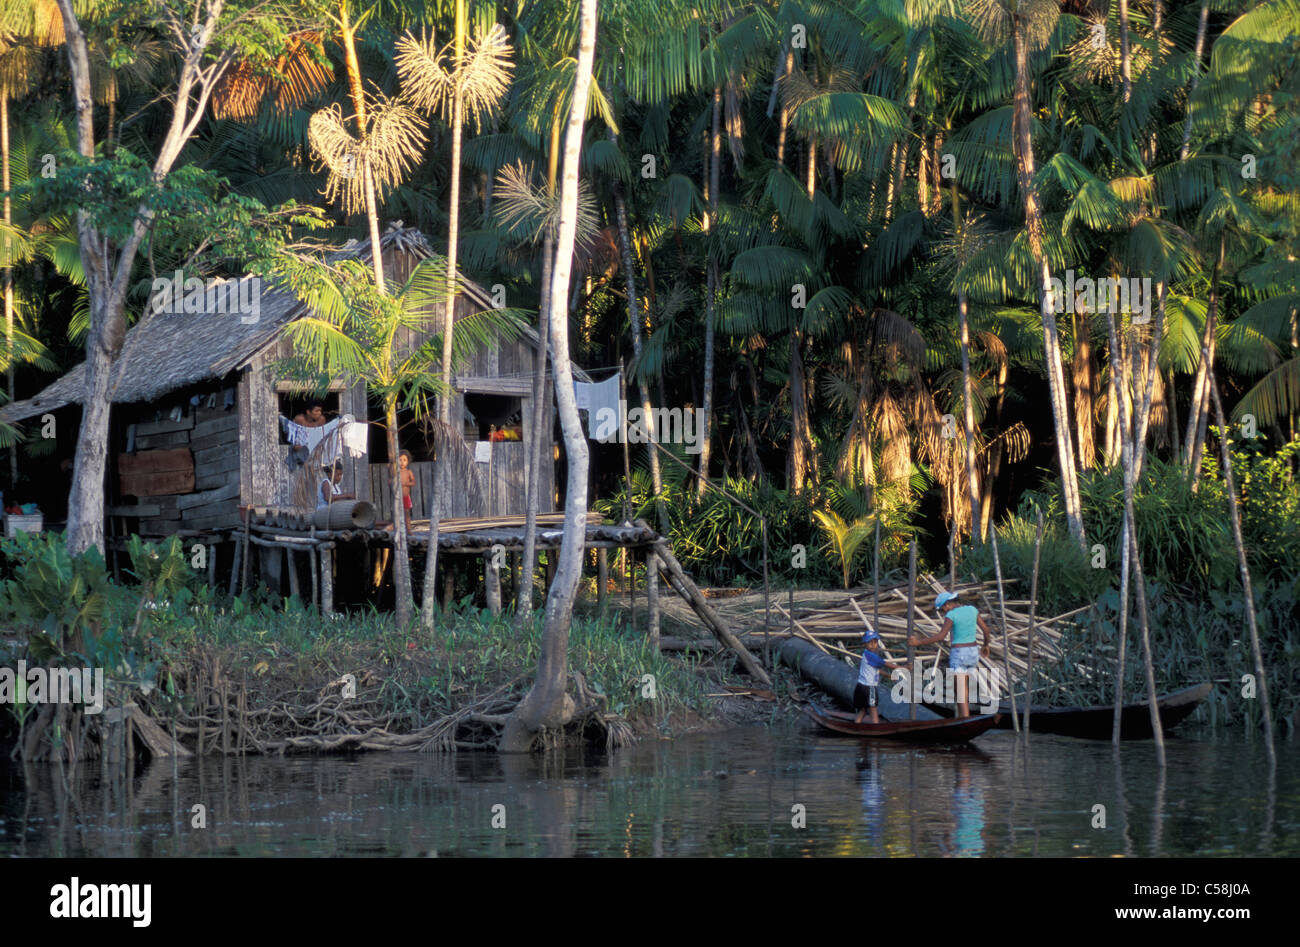 Amazon River, Ilha do Marajo, Amazon Delta, Amazonia, Brazil, South America, hut, river Stock Photo